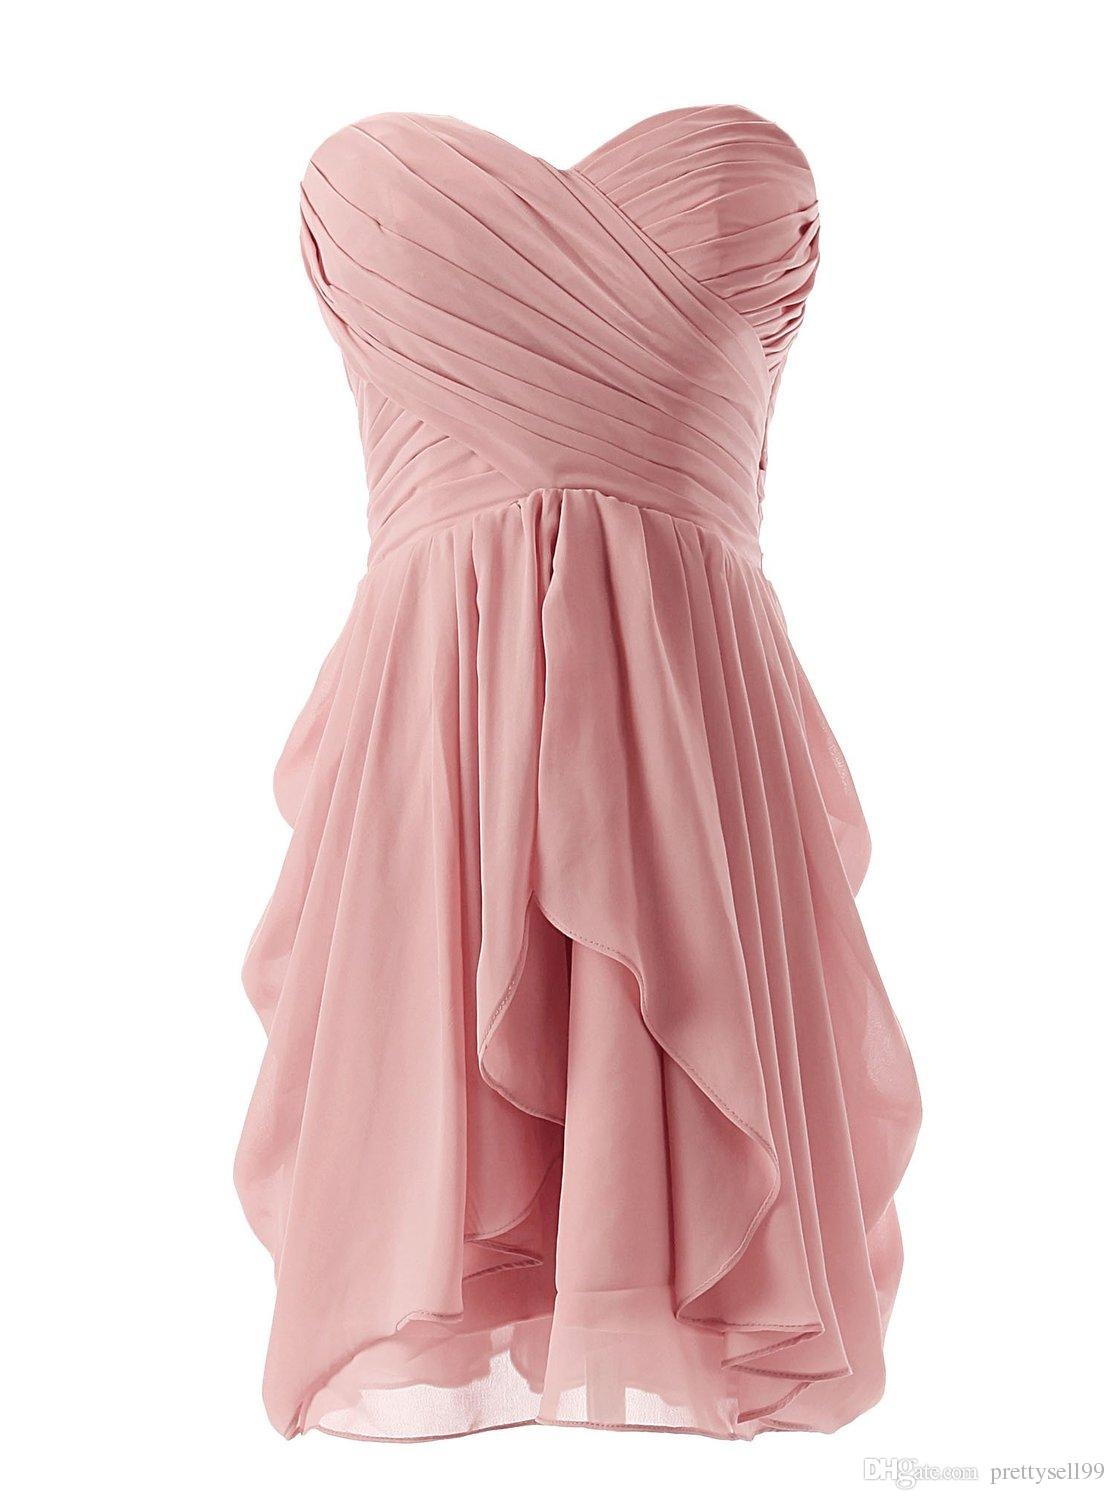 Розовое платье на манекене